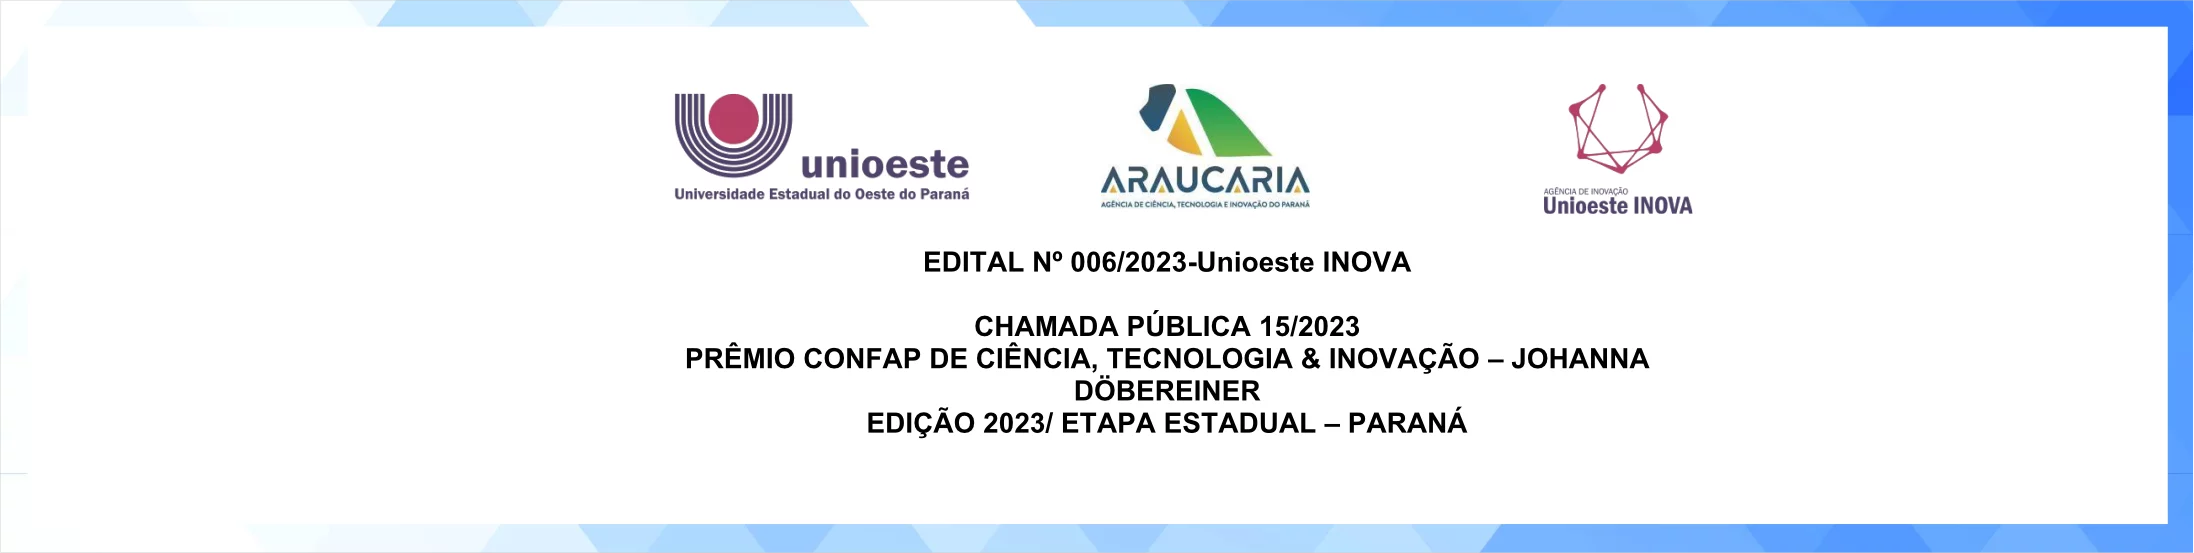 Edital nº 006/2023-Unioeste INOVA